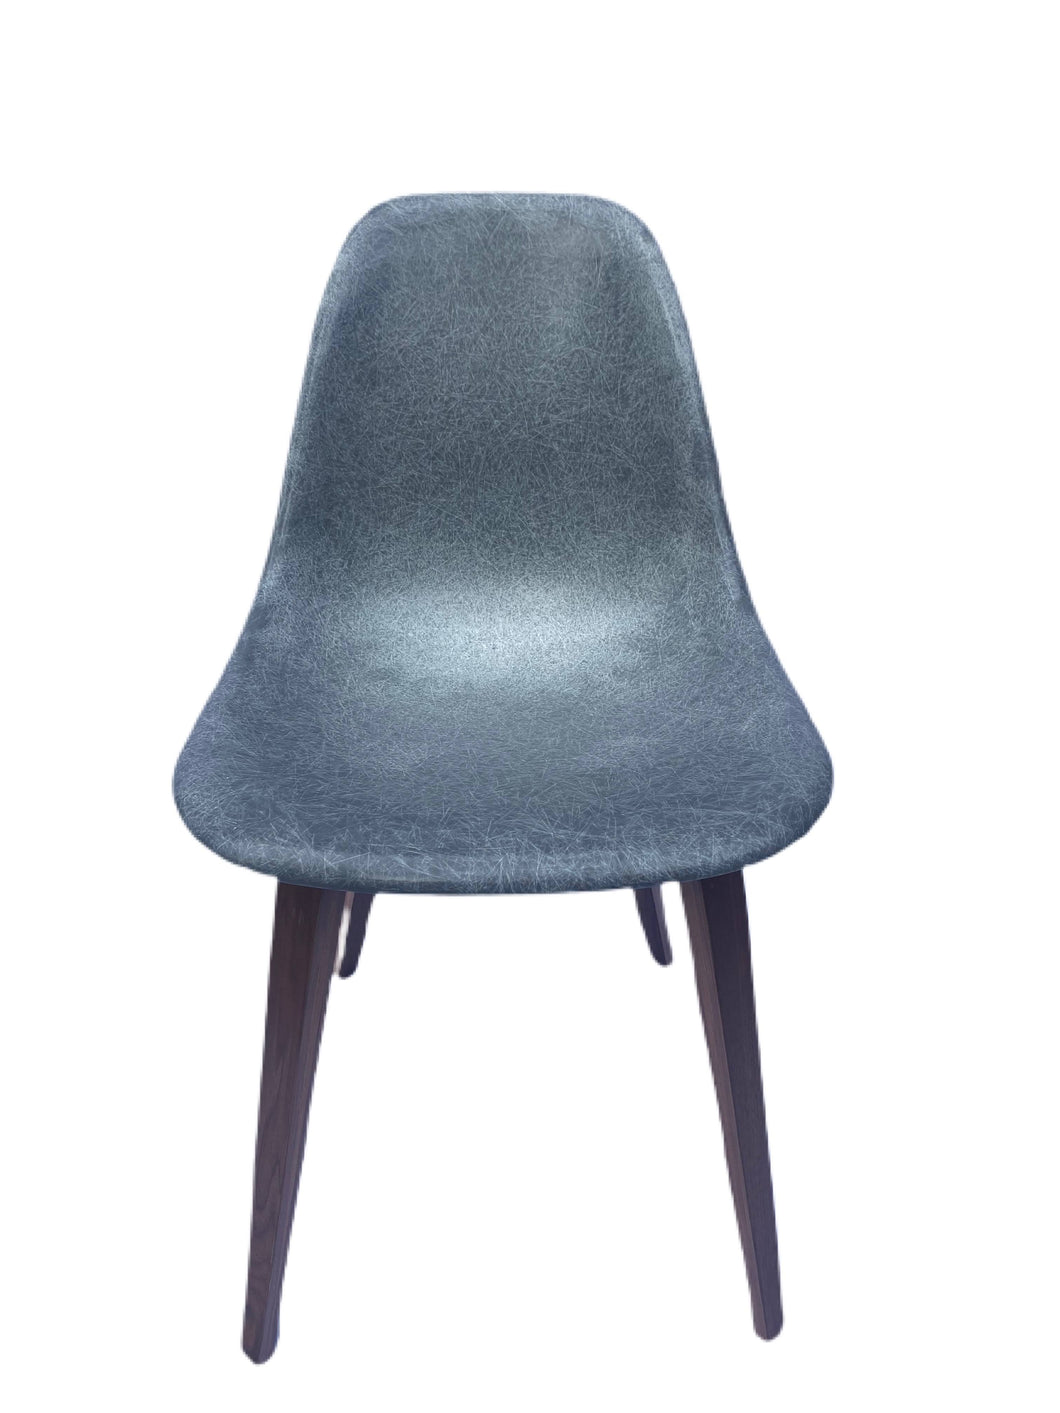 Modernica Gray Fiberglass Ghost Spyder Side Chair